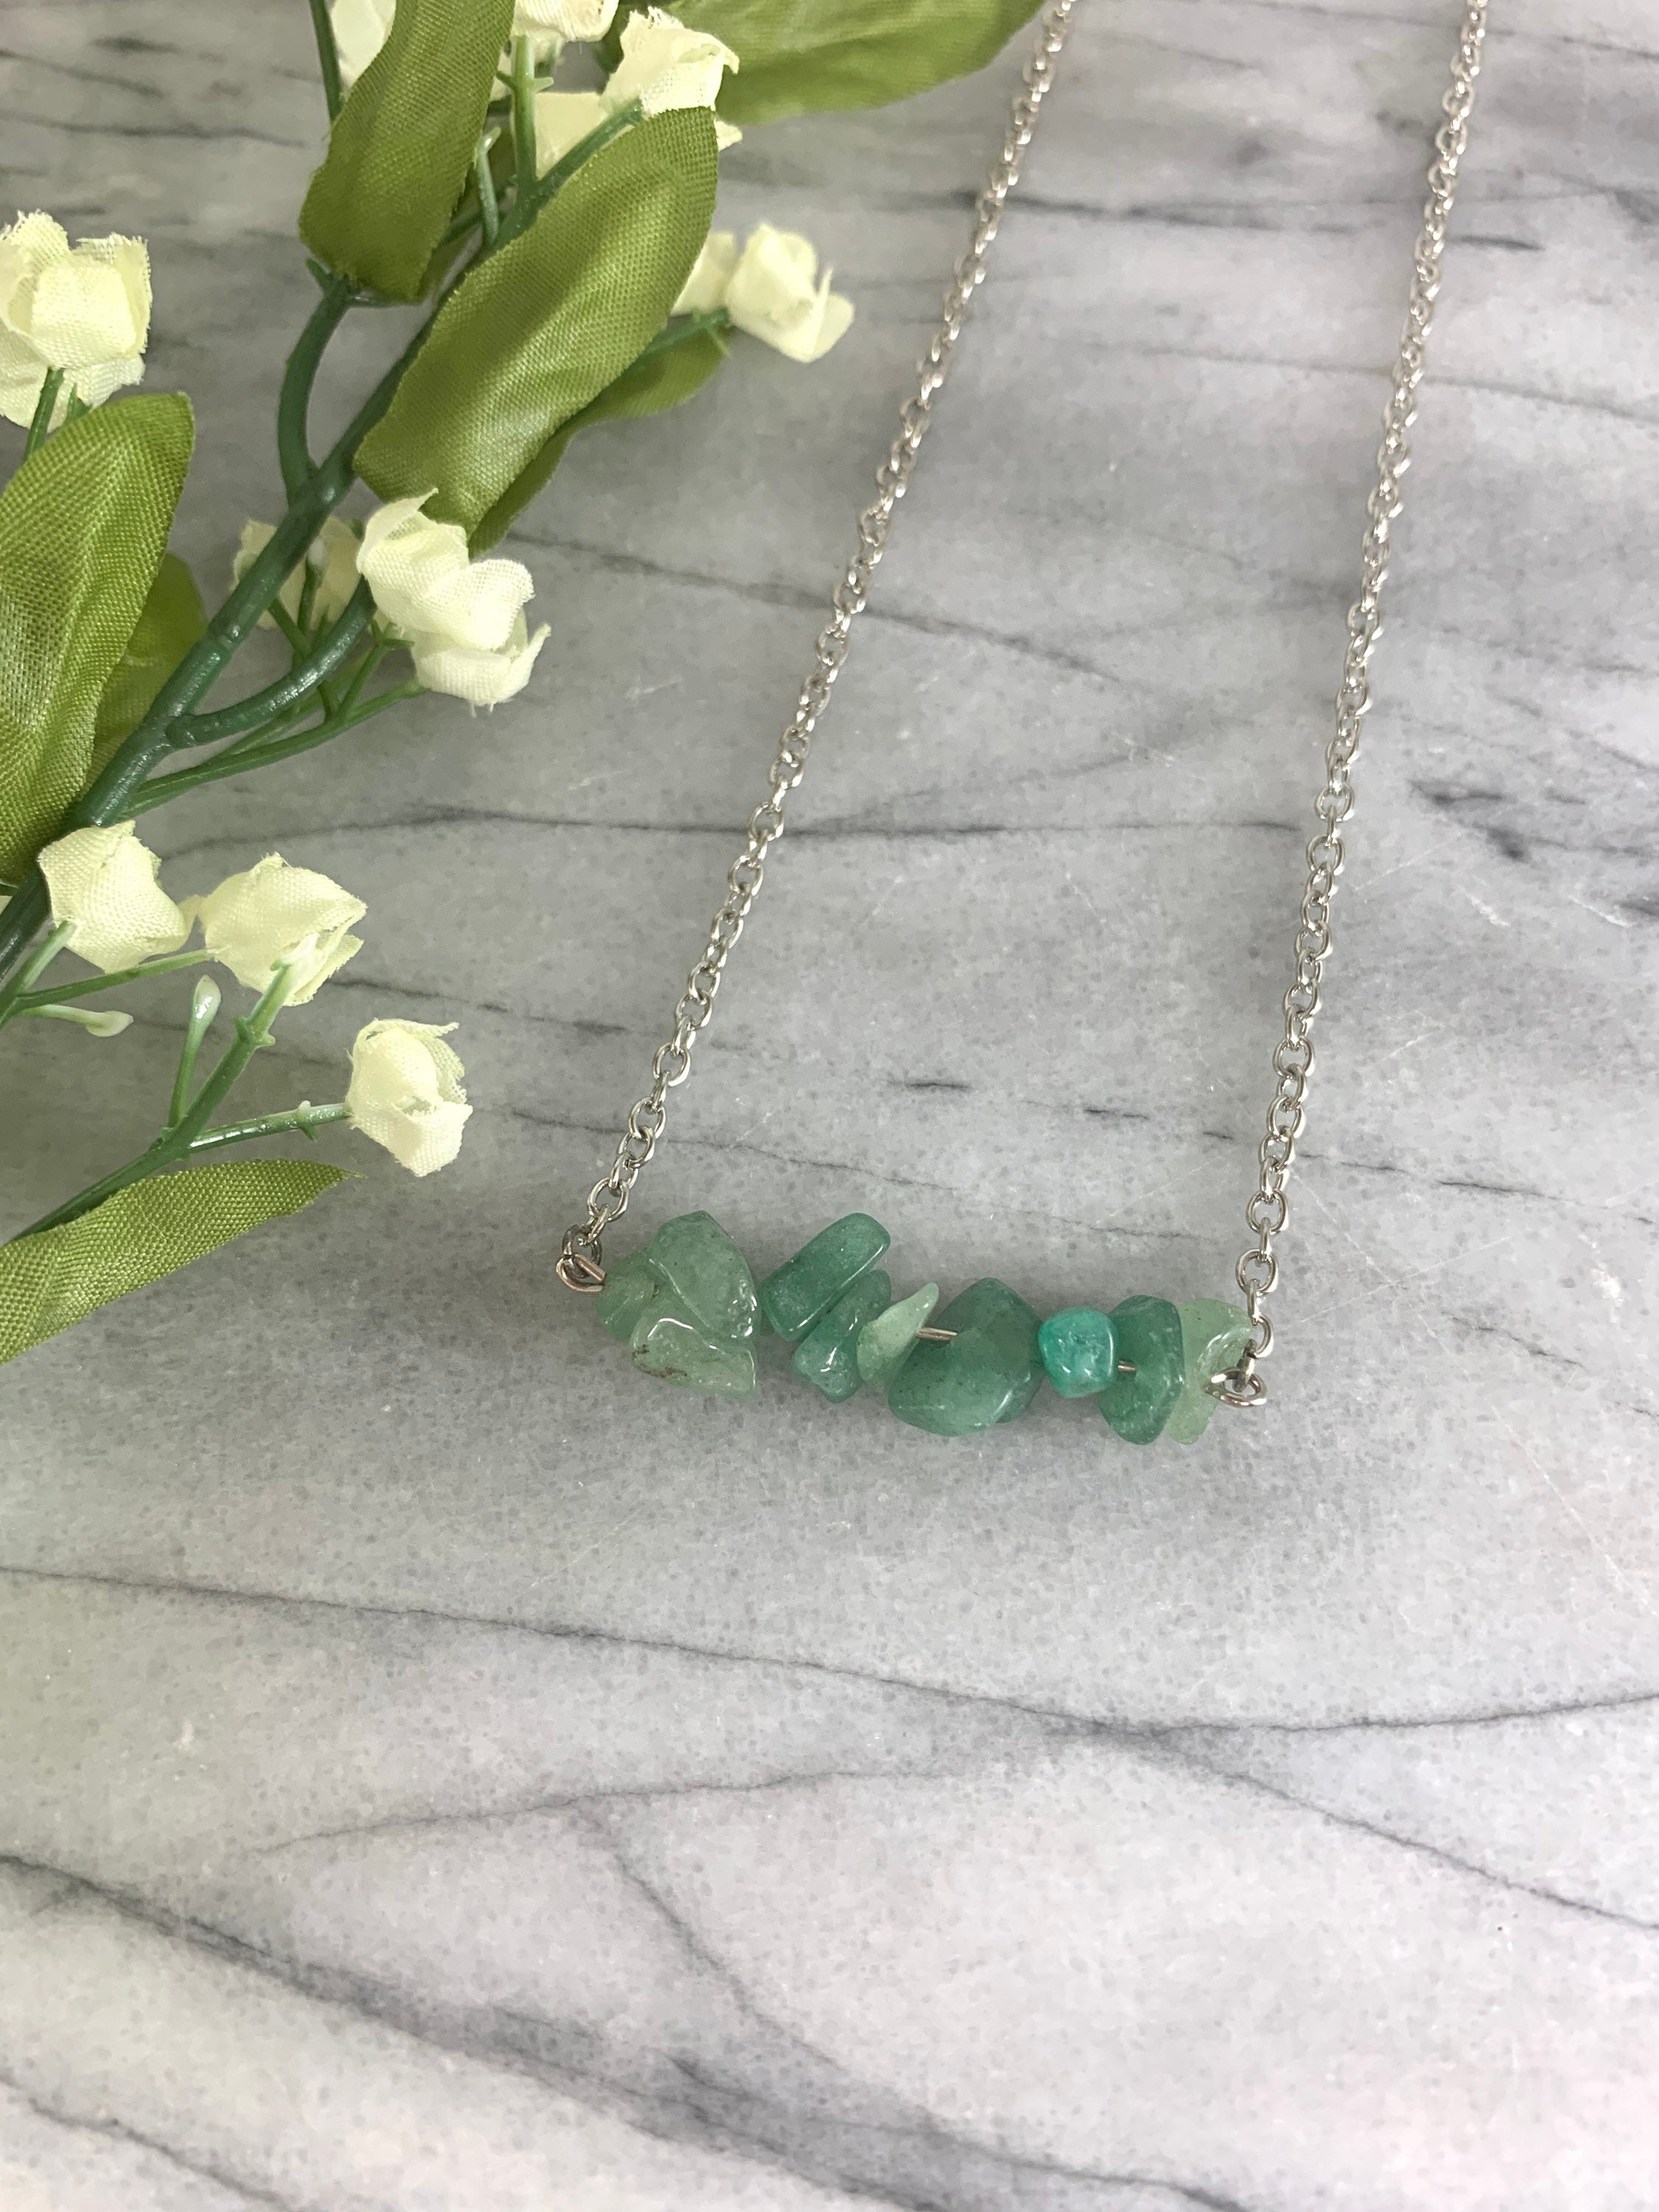 Gemstone necklace blue stone necklace aqua stone necklace | Etsy